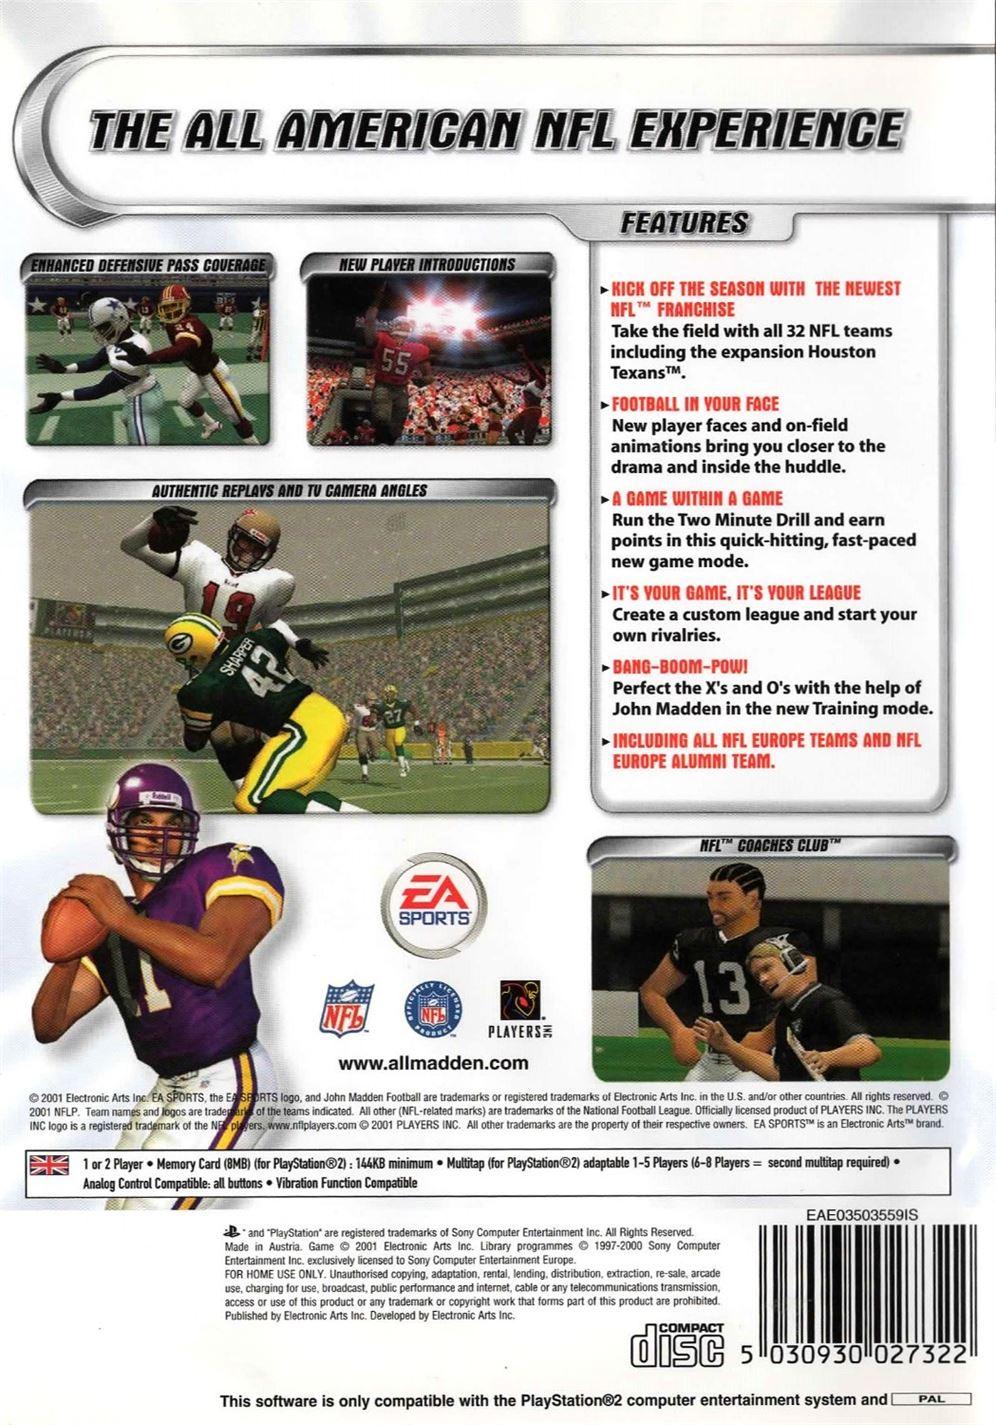 Madden NFL 2002 PS2 (PlayStation 2) - UK Seller